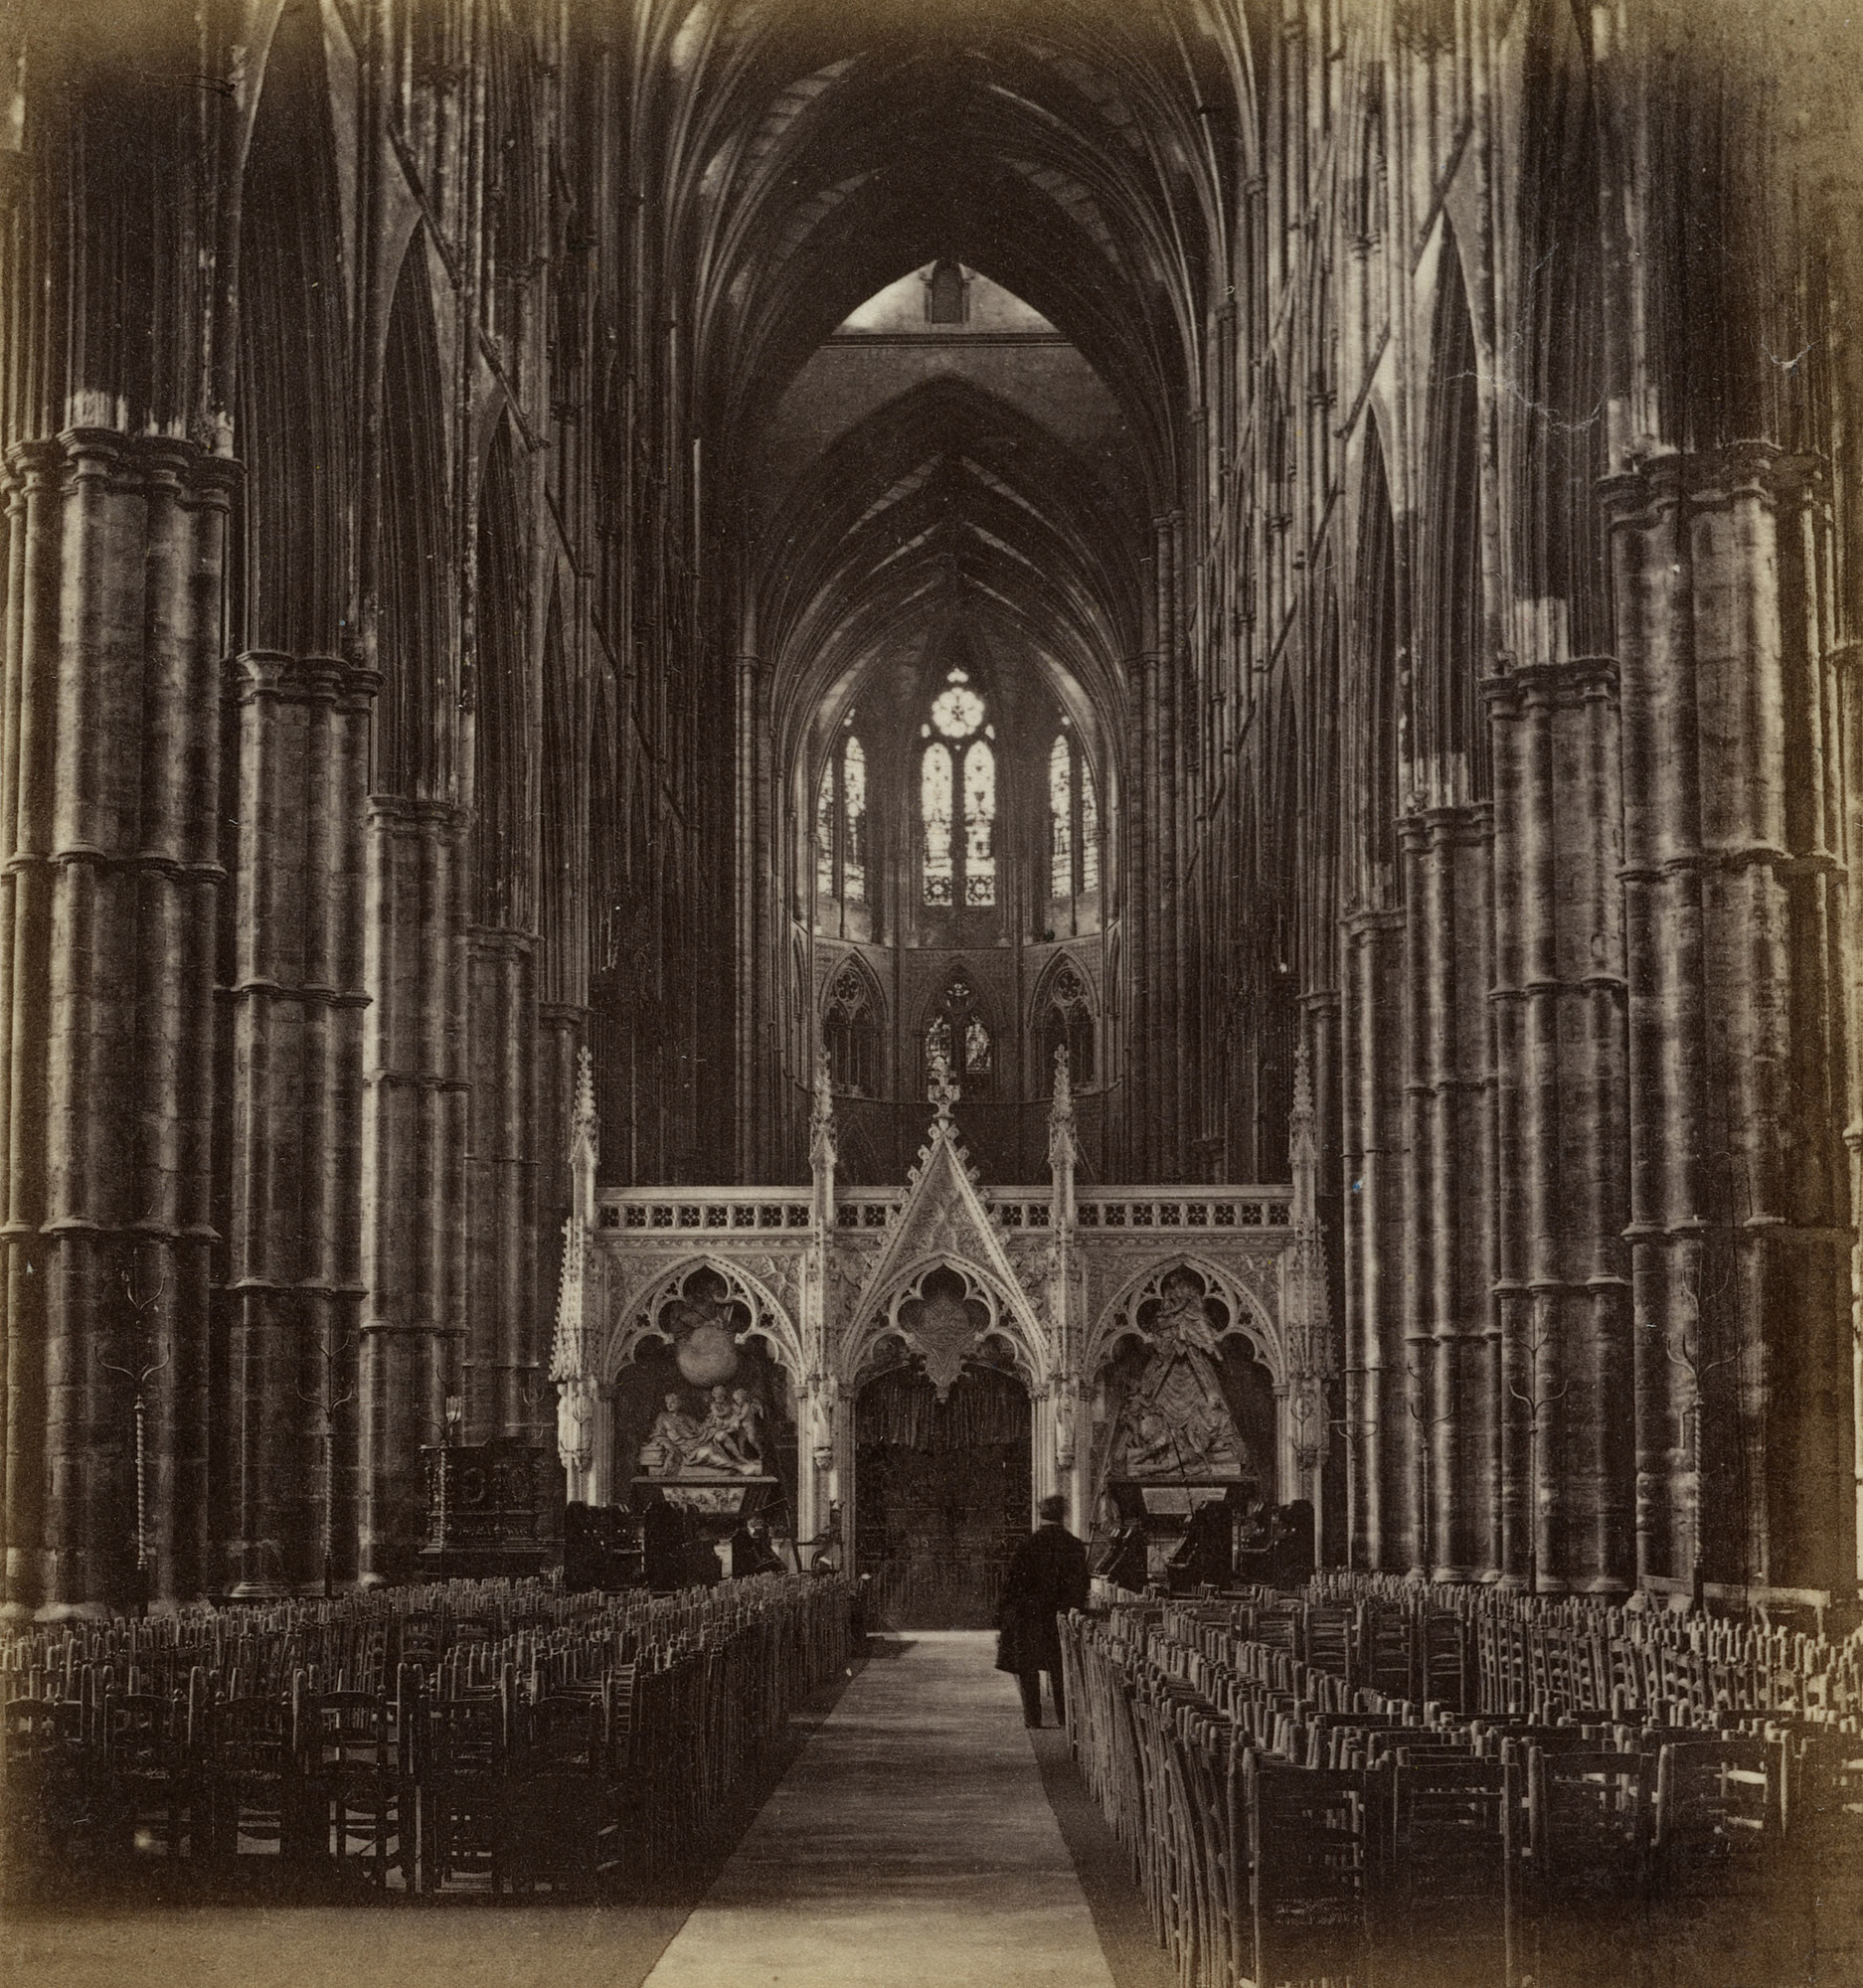 Вестминстерское аббатство (Коллегиальная церковь Святого Петра в Вестминстере), ок. 1860. Фотограф Джордж Вашингтон Уилсон